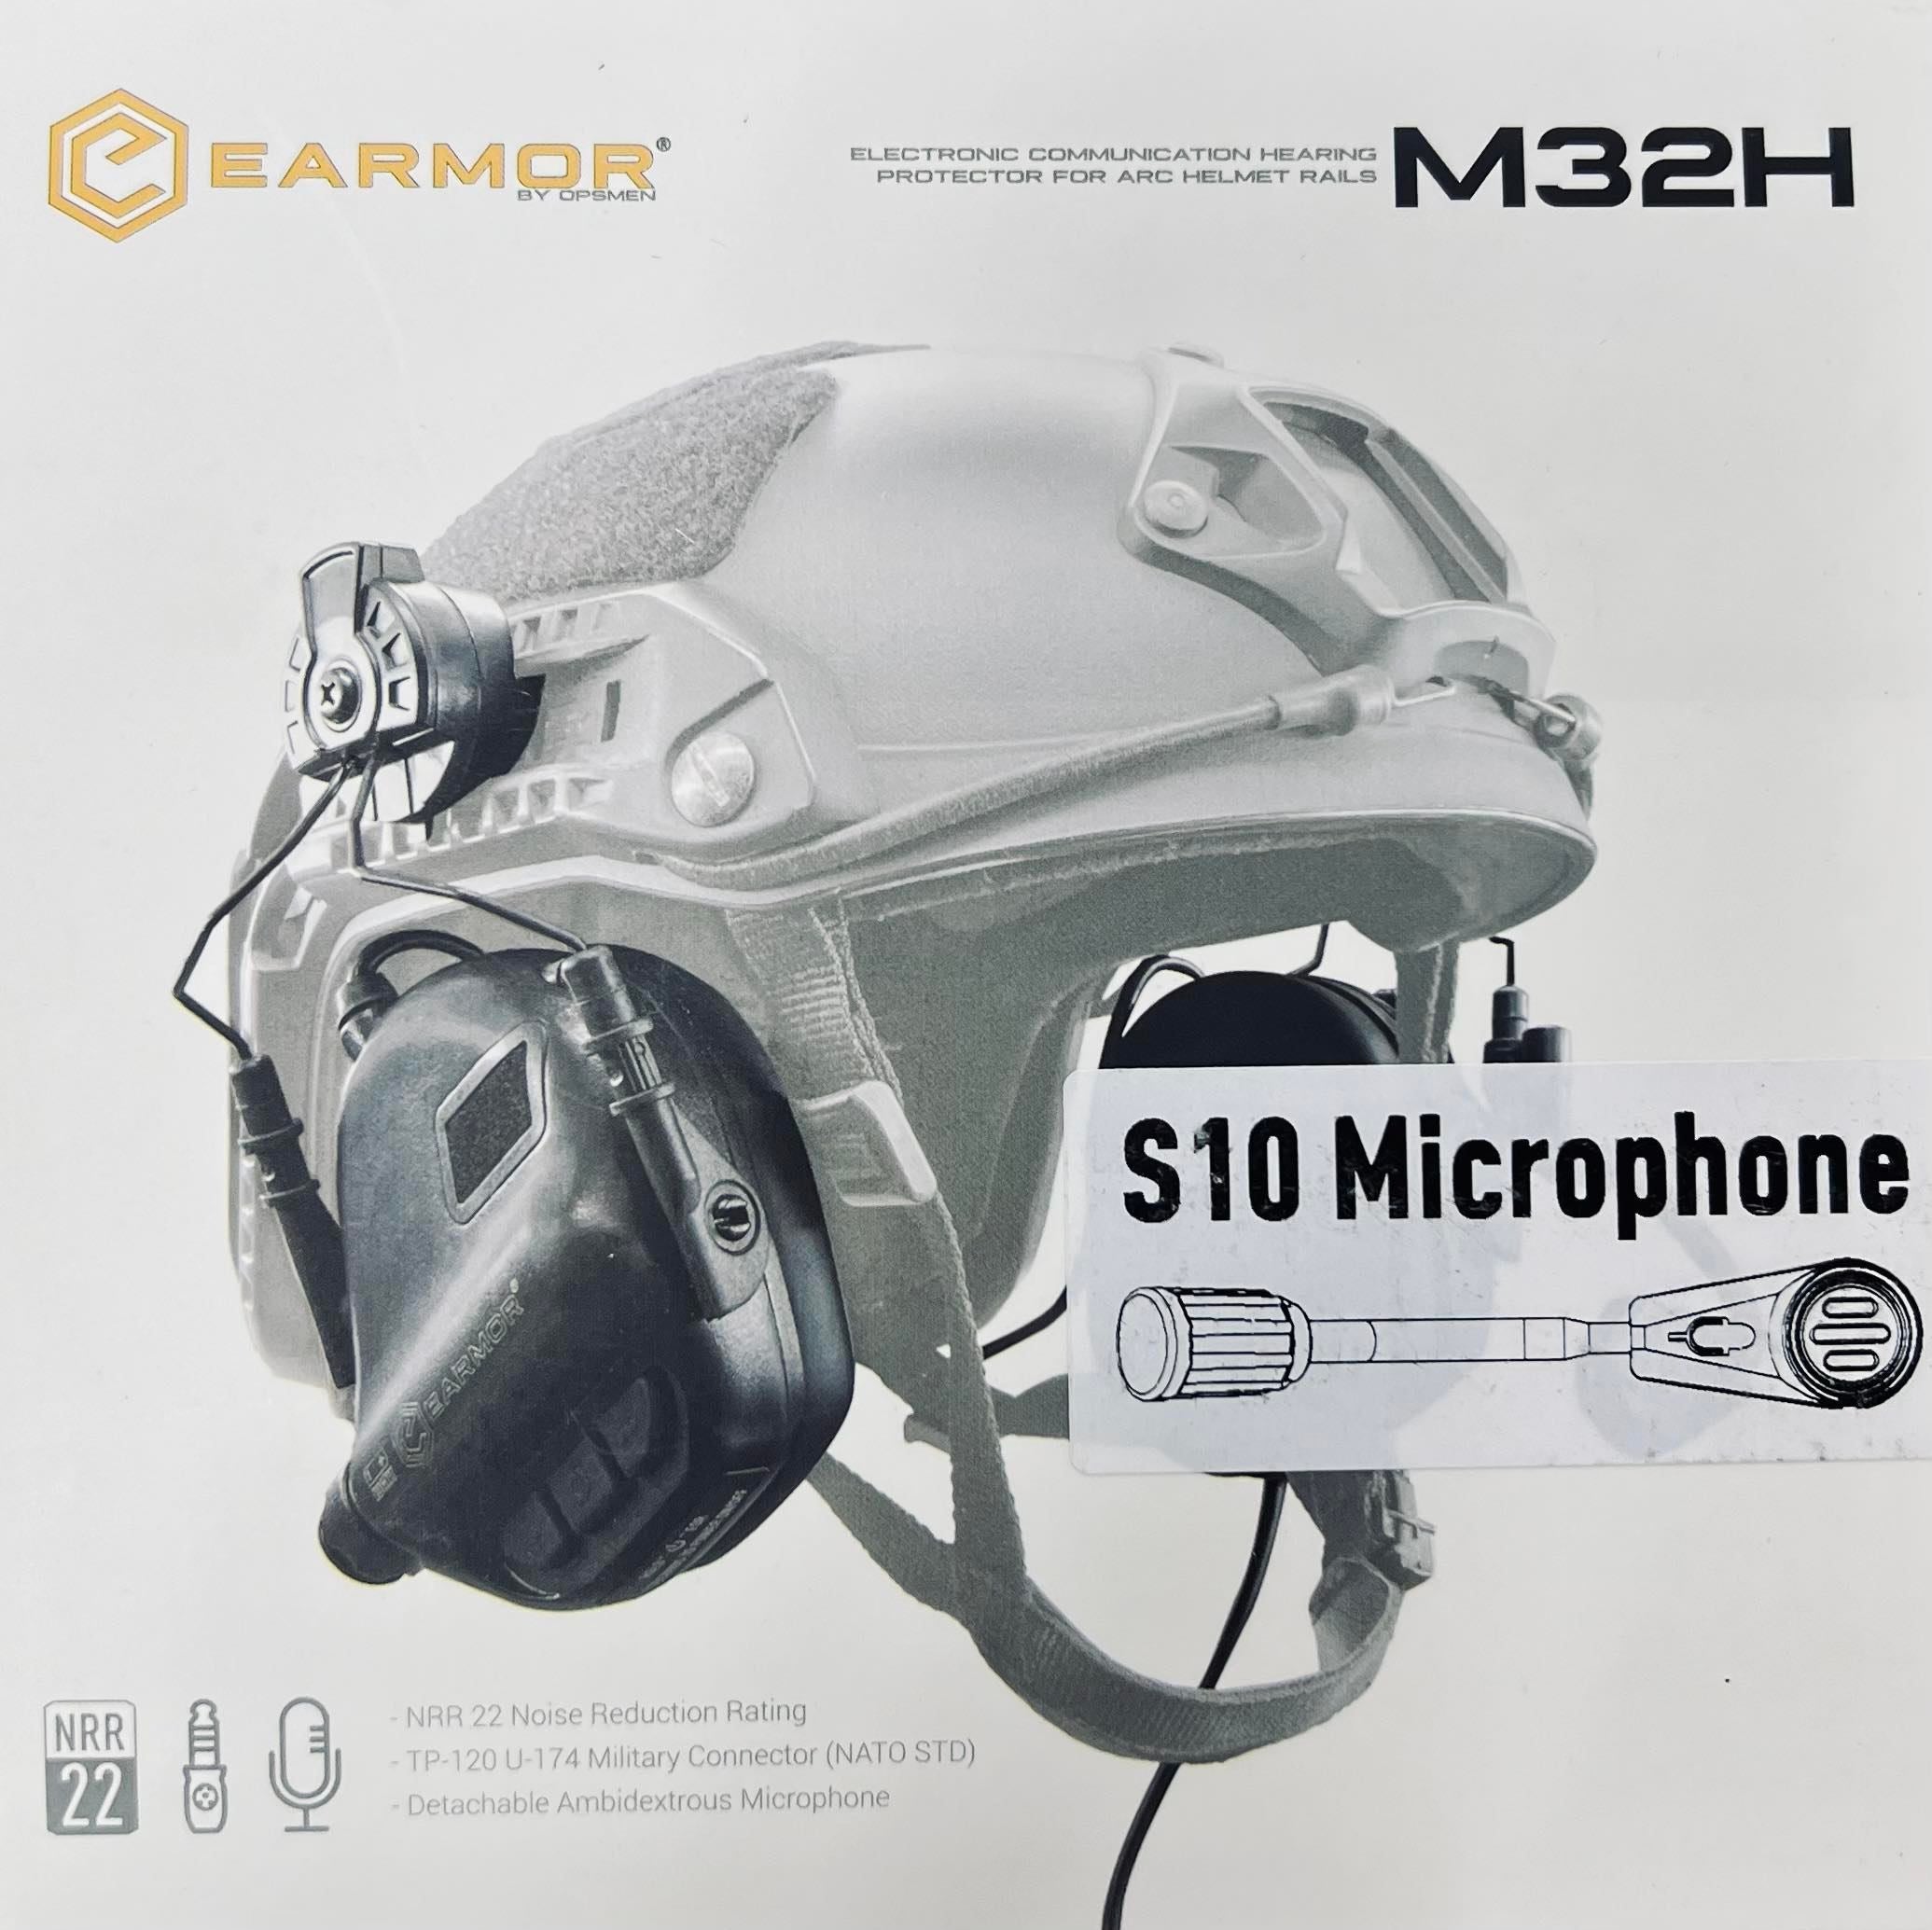 Opsmen - Earmor M32H Professional Electronic Earmuff (GEN 5)